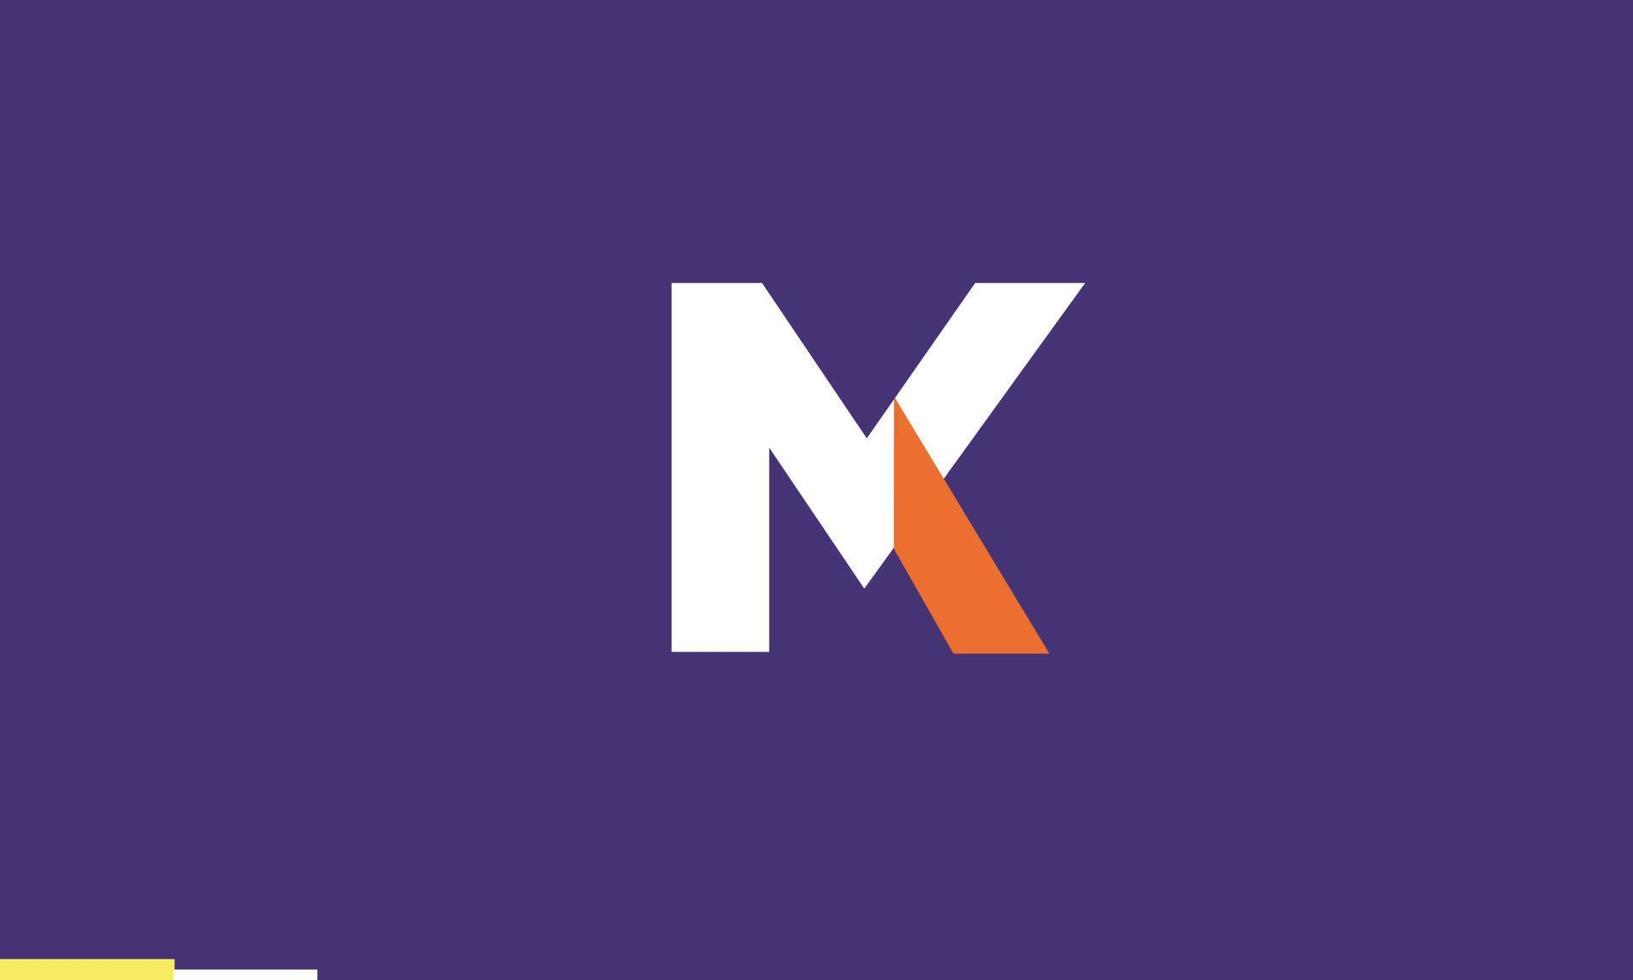 letras do alfabeto iniciais monograma logotipo mk, km, m e k vetor